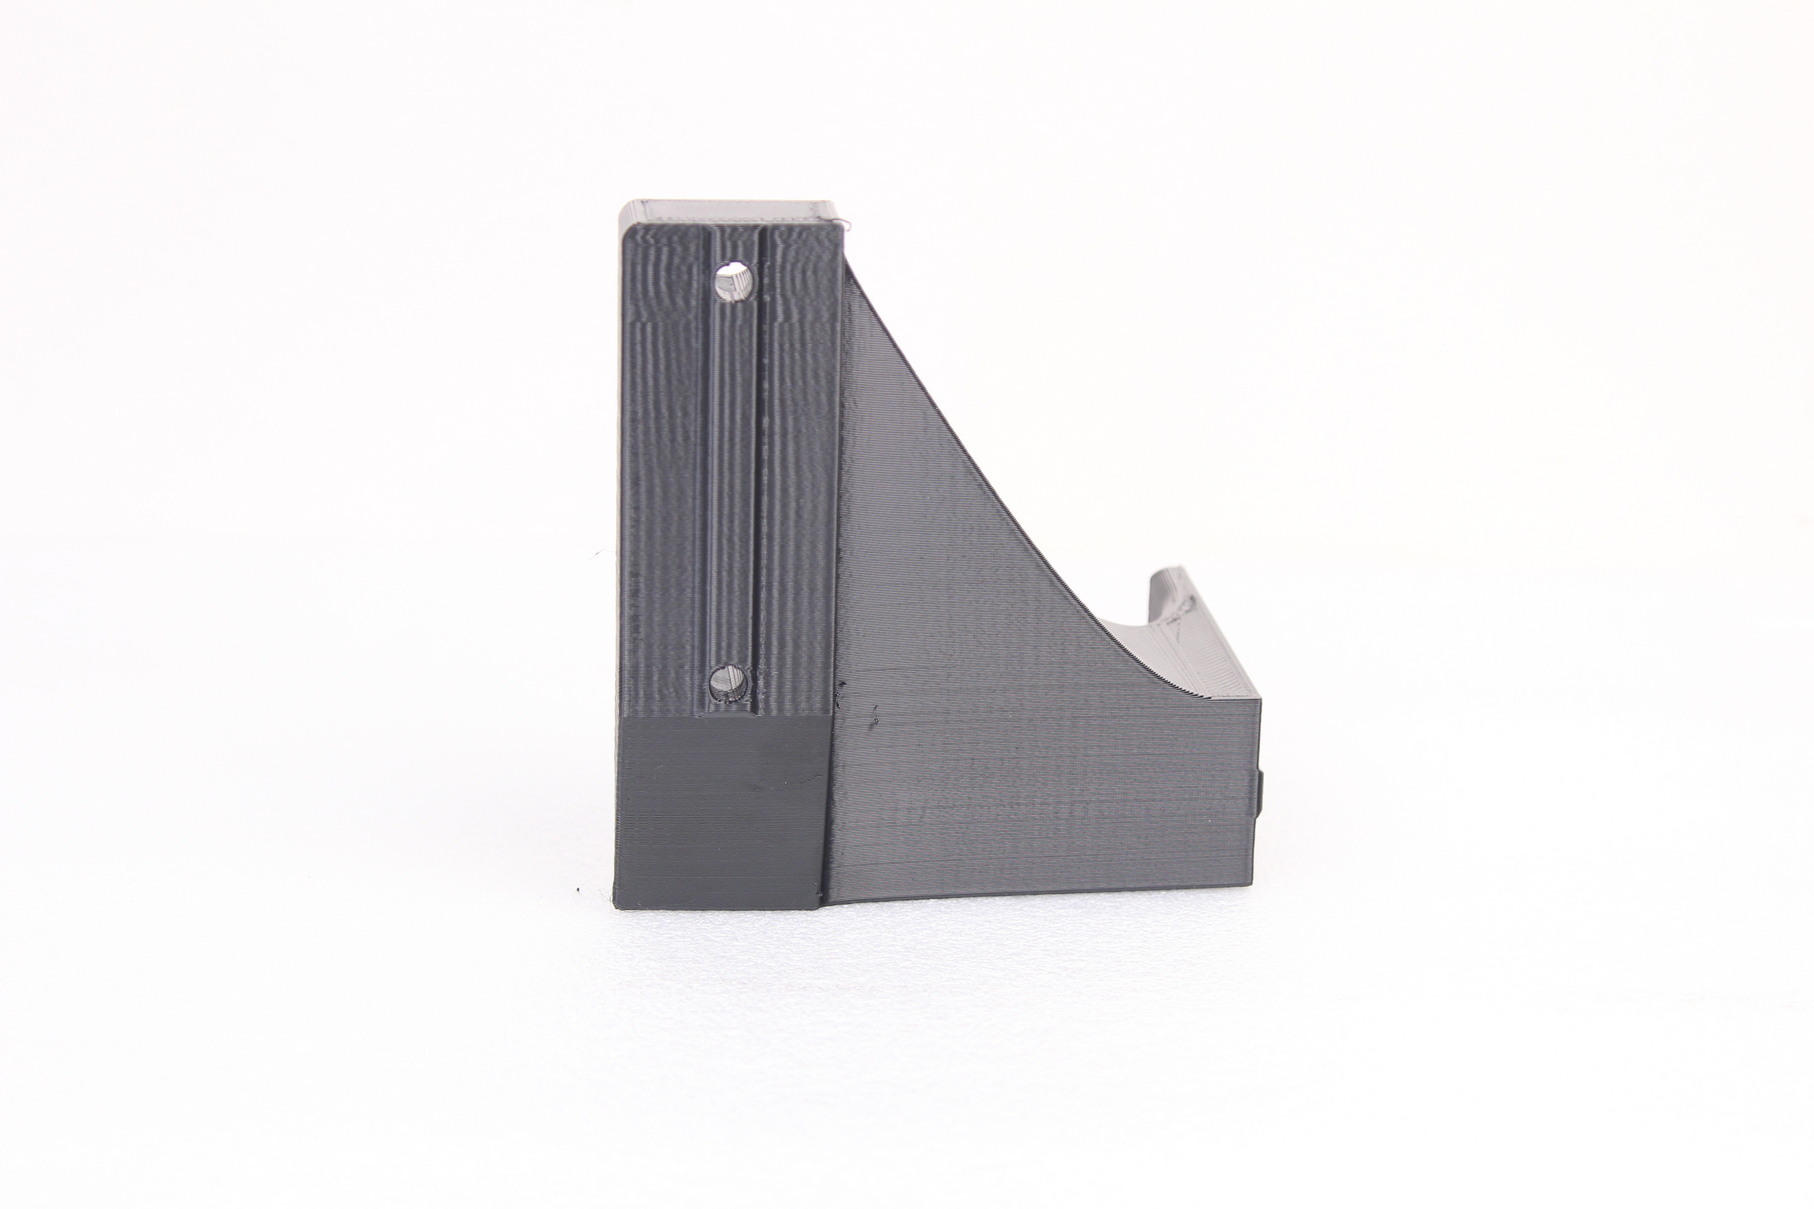 Prusa Mini brace pritned on RatRig V Core 3 in PETG 2 | RatRig V-Core 3 Review: Premium CoreXY 3D Printer Kit